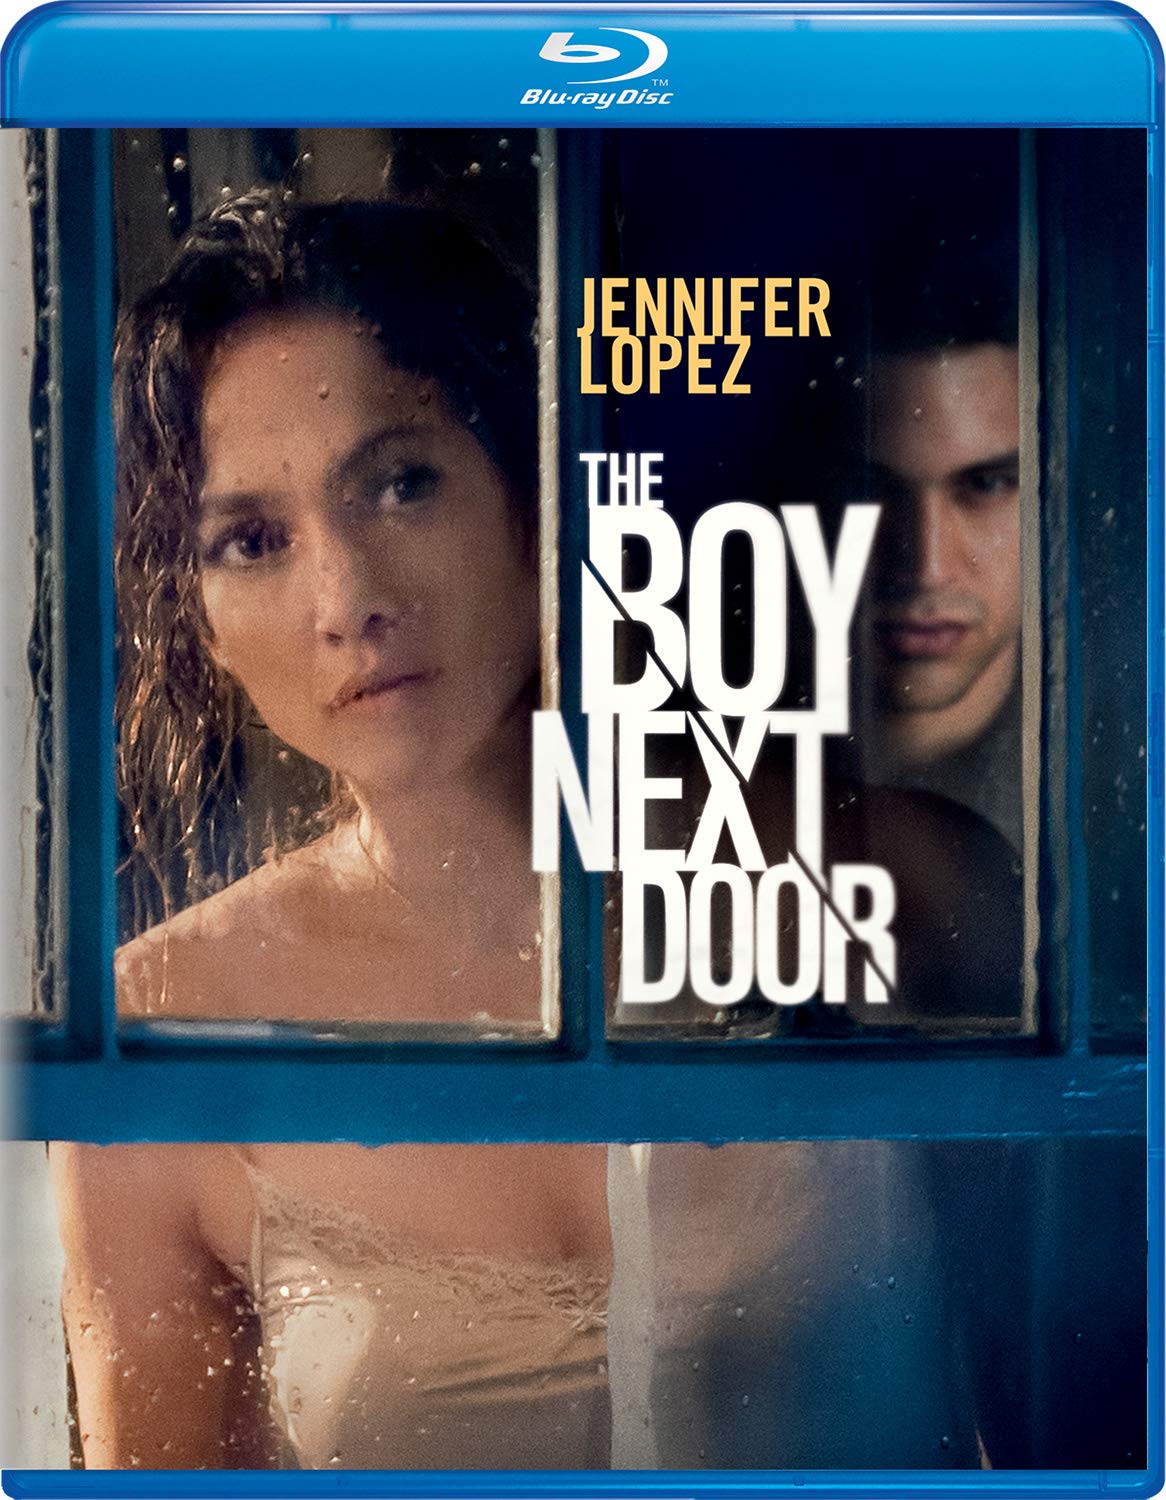 The Boy Next Door DVD Release Date April 28, 2015